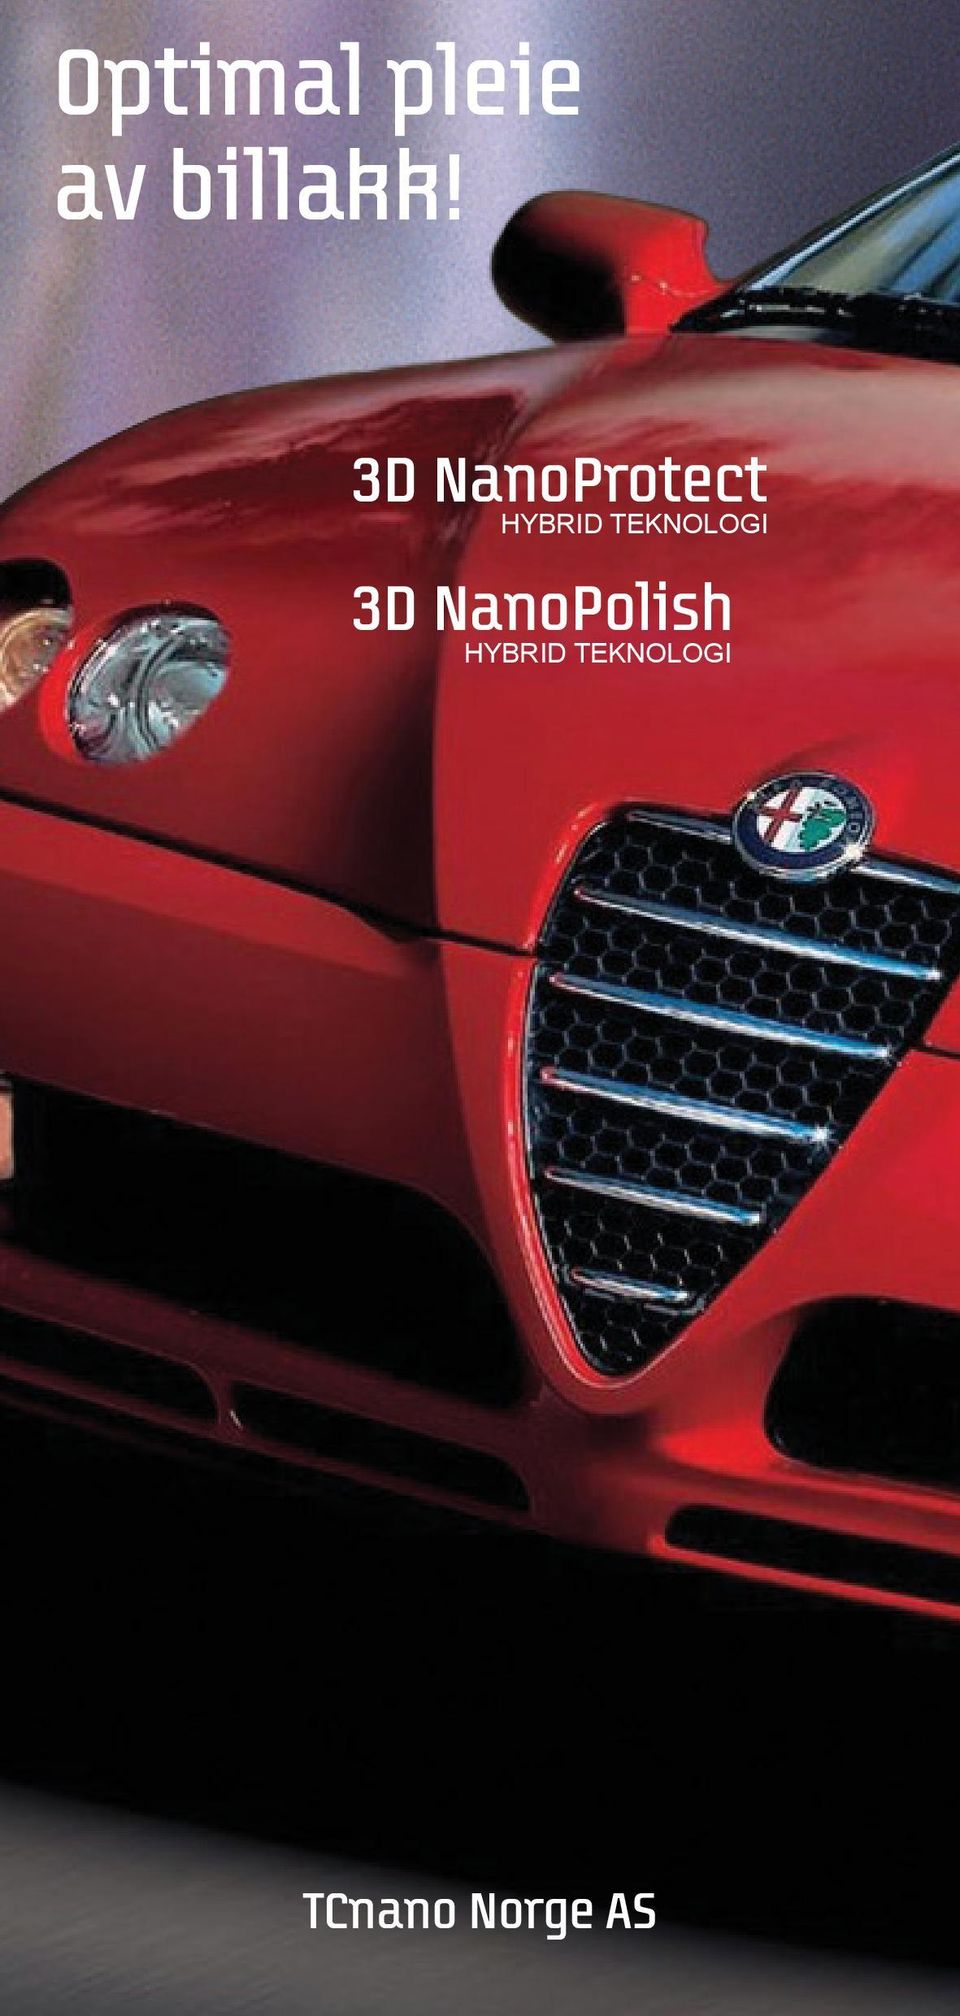 TEKNOLOGI 3D NanoPolish